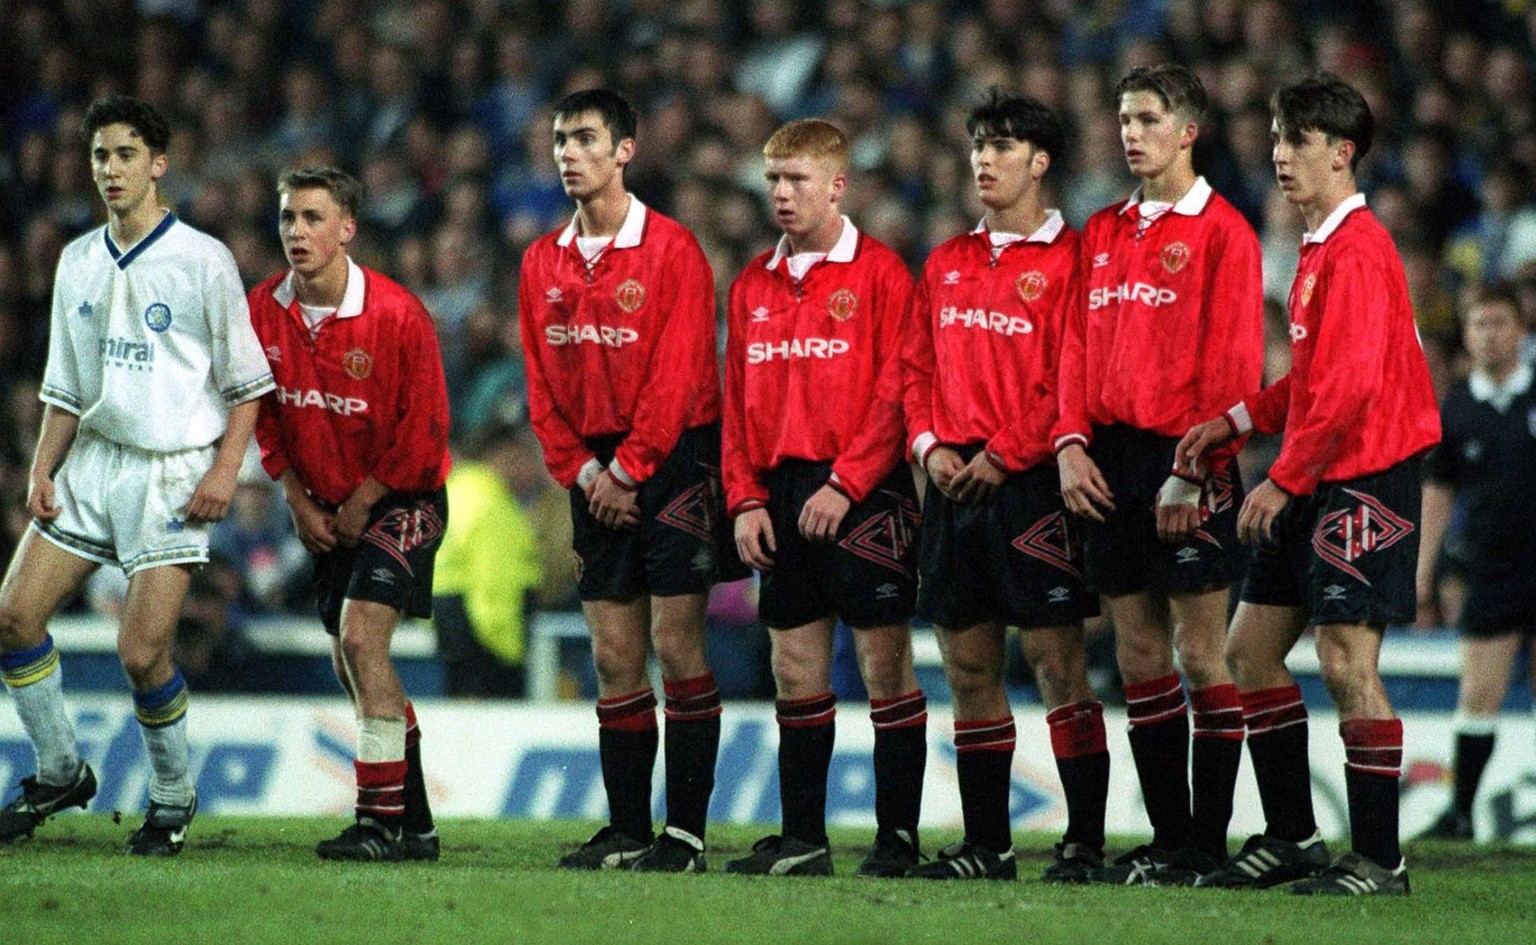 Bildnummer: 07874421 Datum: 13.05.1993 Copyright: imago/Colorsport
Manchester United Wall. L to R. Matthew Smithard (Leeds) Richard Irving, Gary Gillespie, Paul Scholes, Ben Thornley, David Beckham, G ...